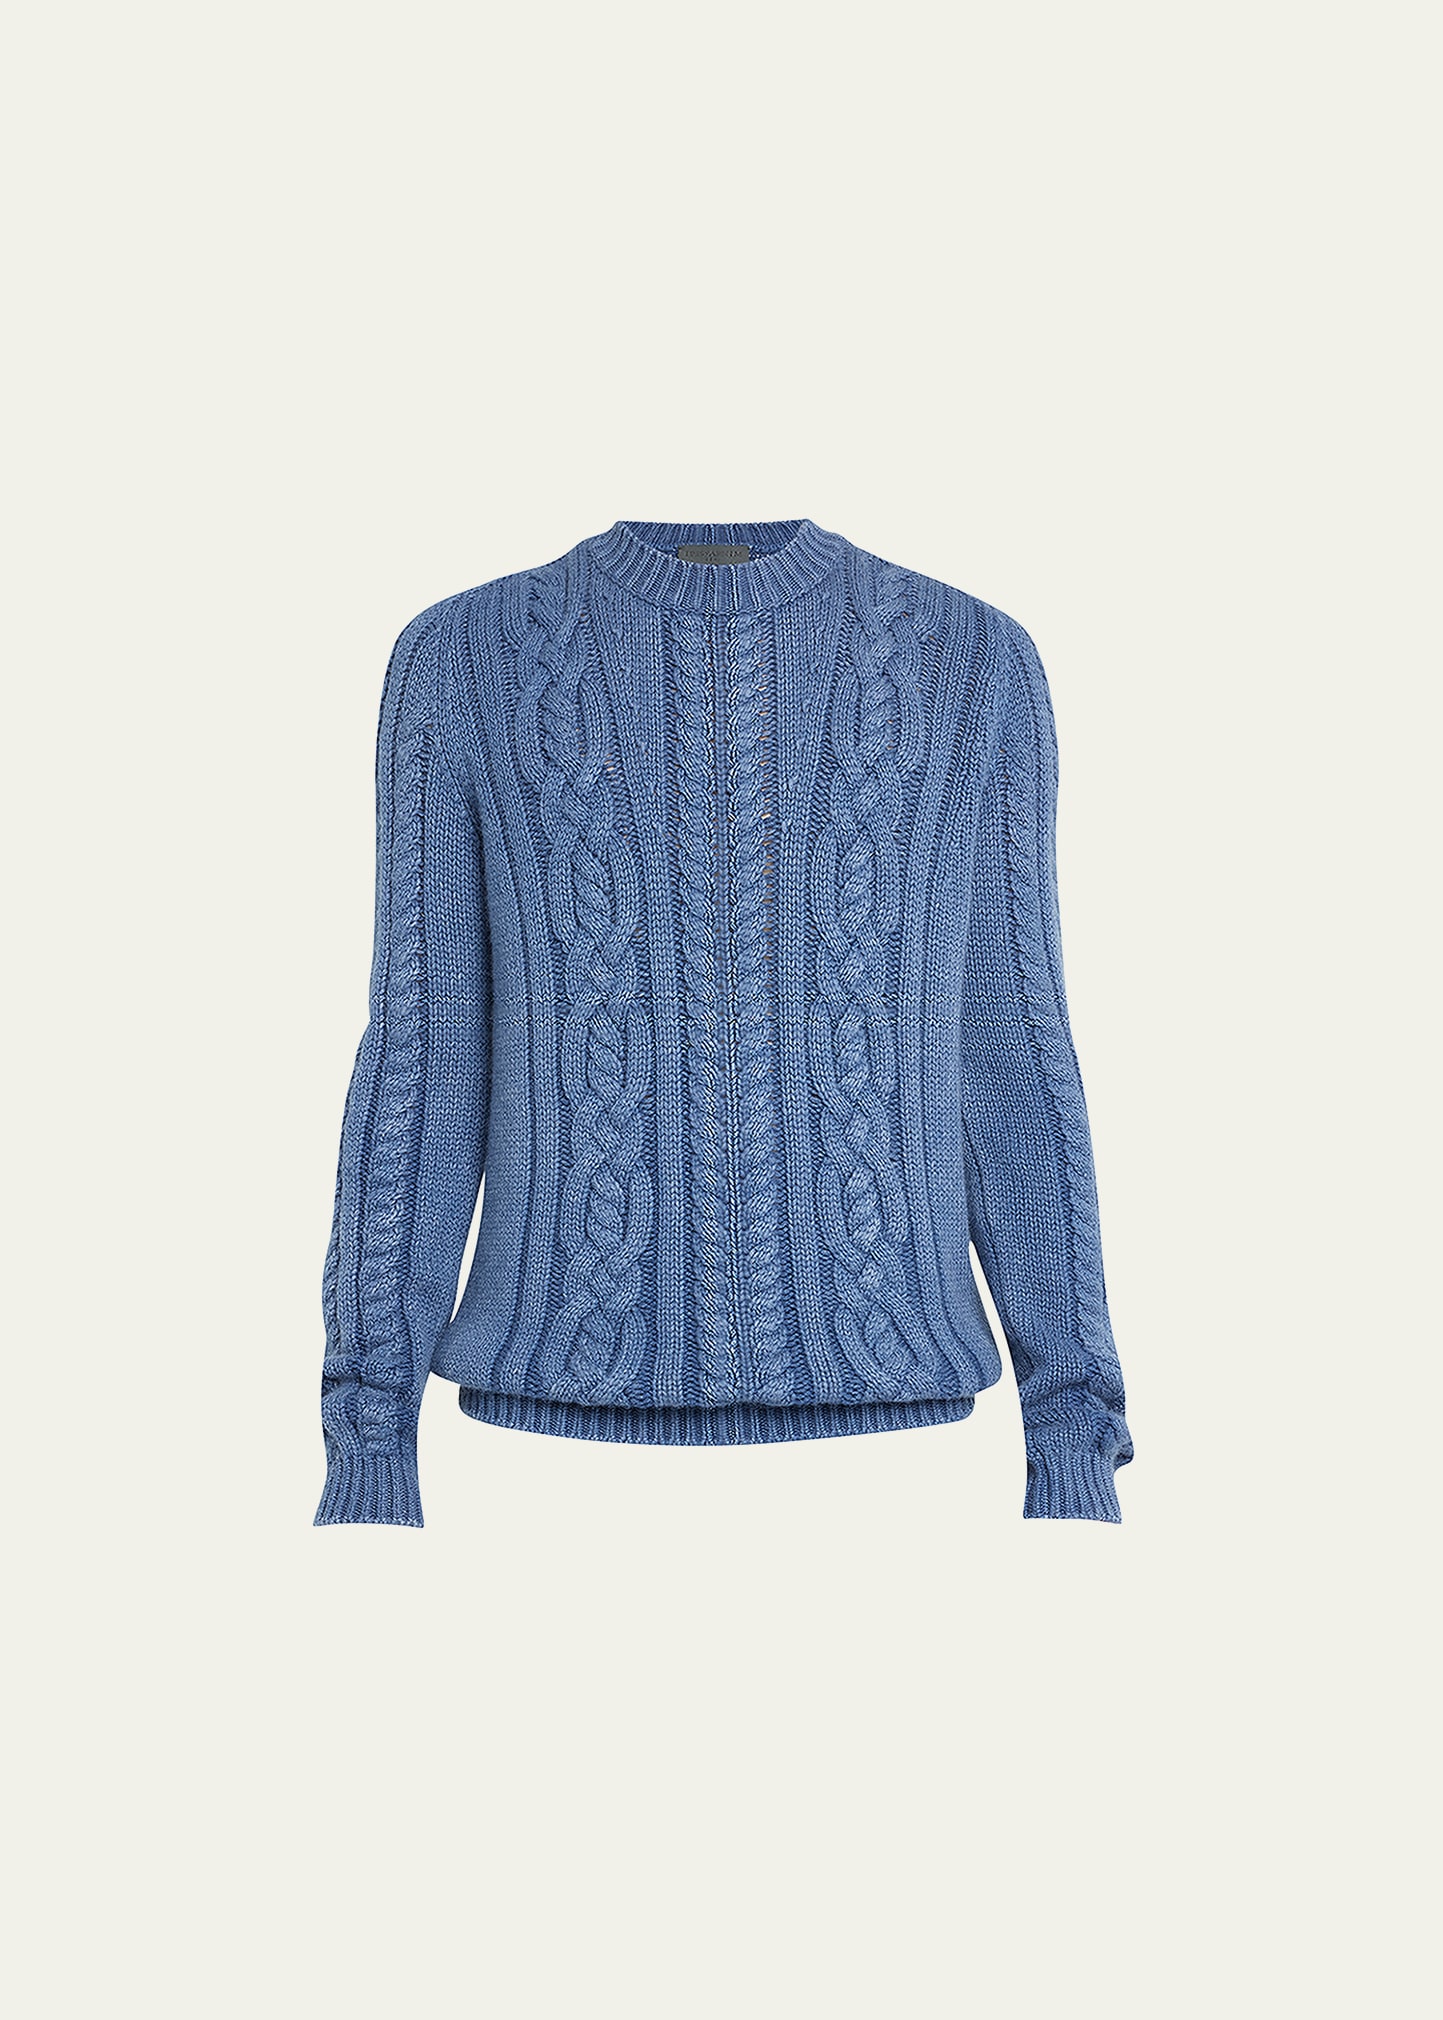 Iris Von Arnim Men's Cashmere Cable-Knit Sweater